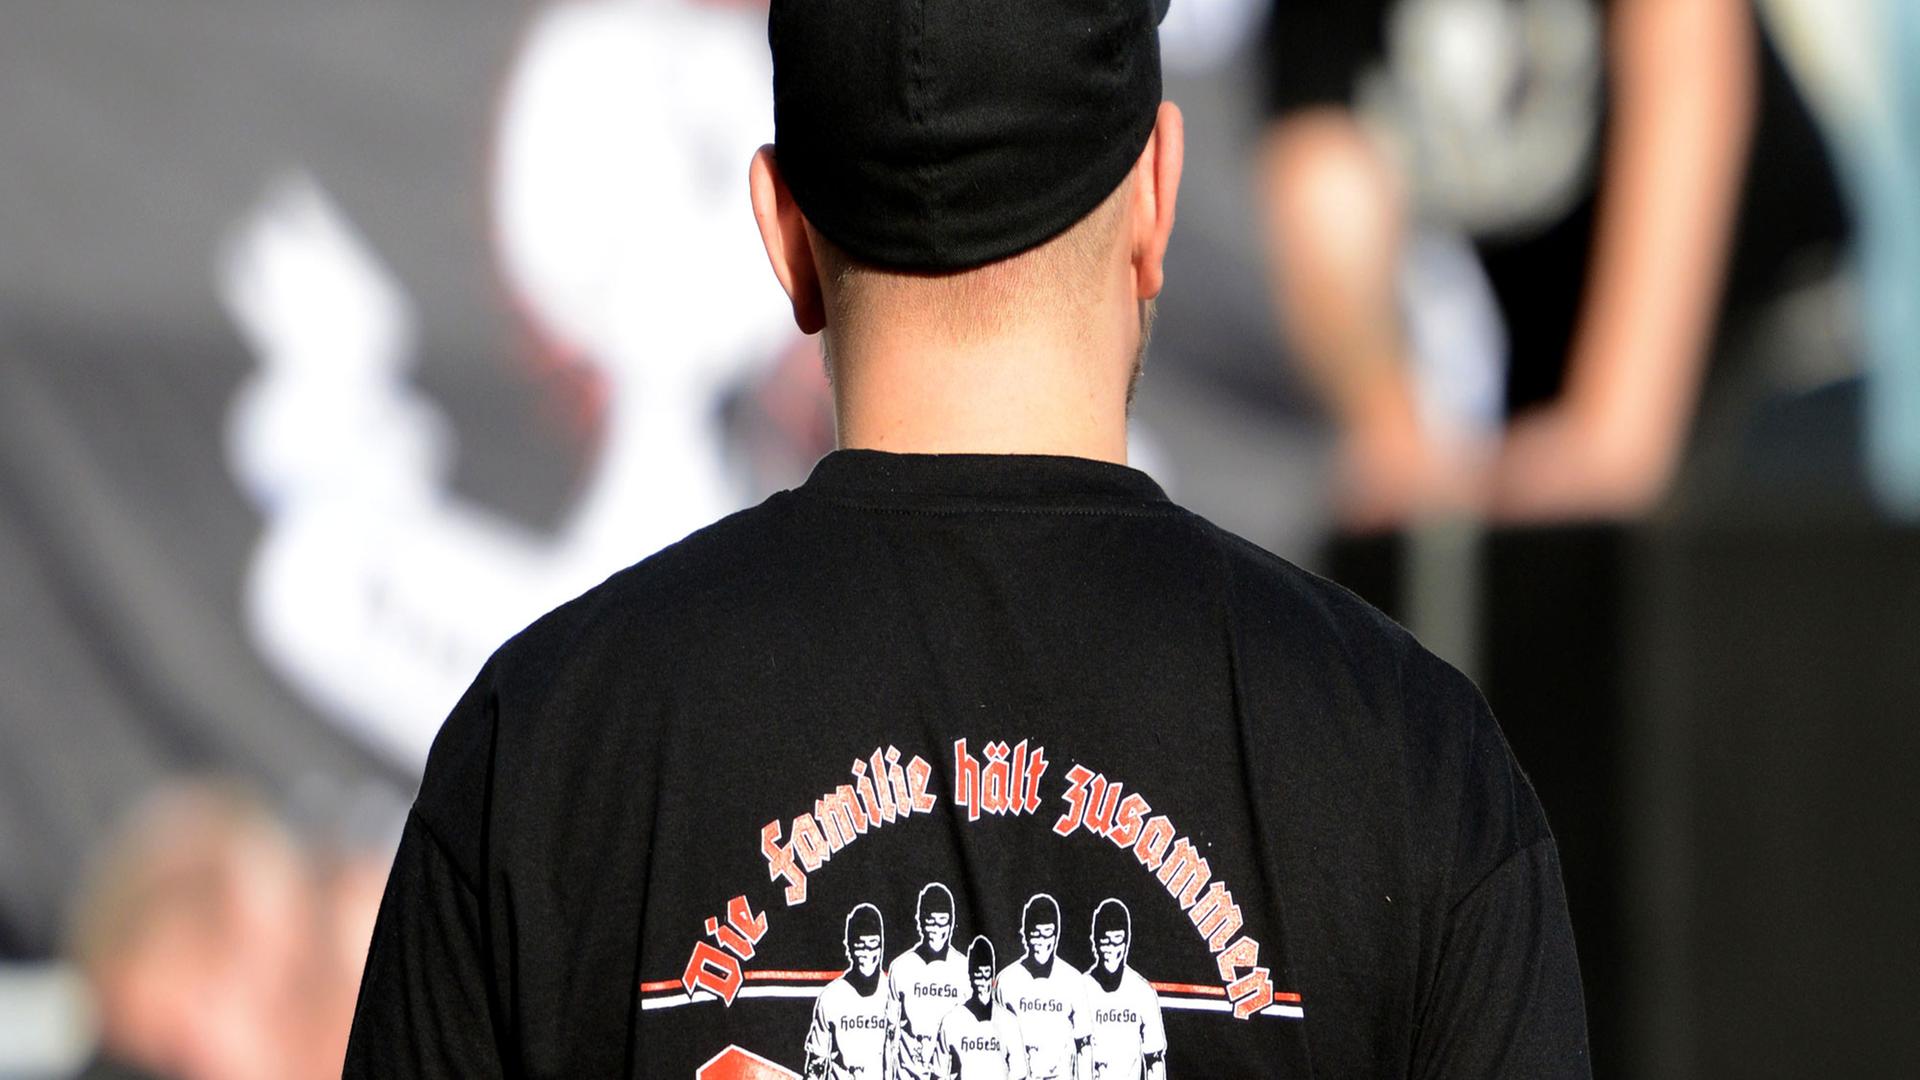 Ein Demonstrant trägt am 26.10.2014 in Köln ein T-Shirt der als gewaltbereit bekannten Gruppe "Hooligans gegen Salafisten".